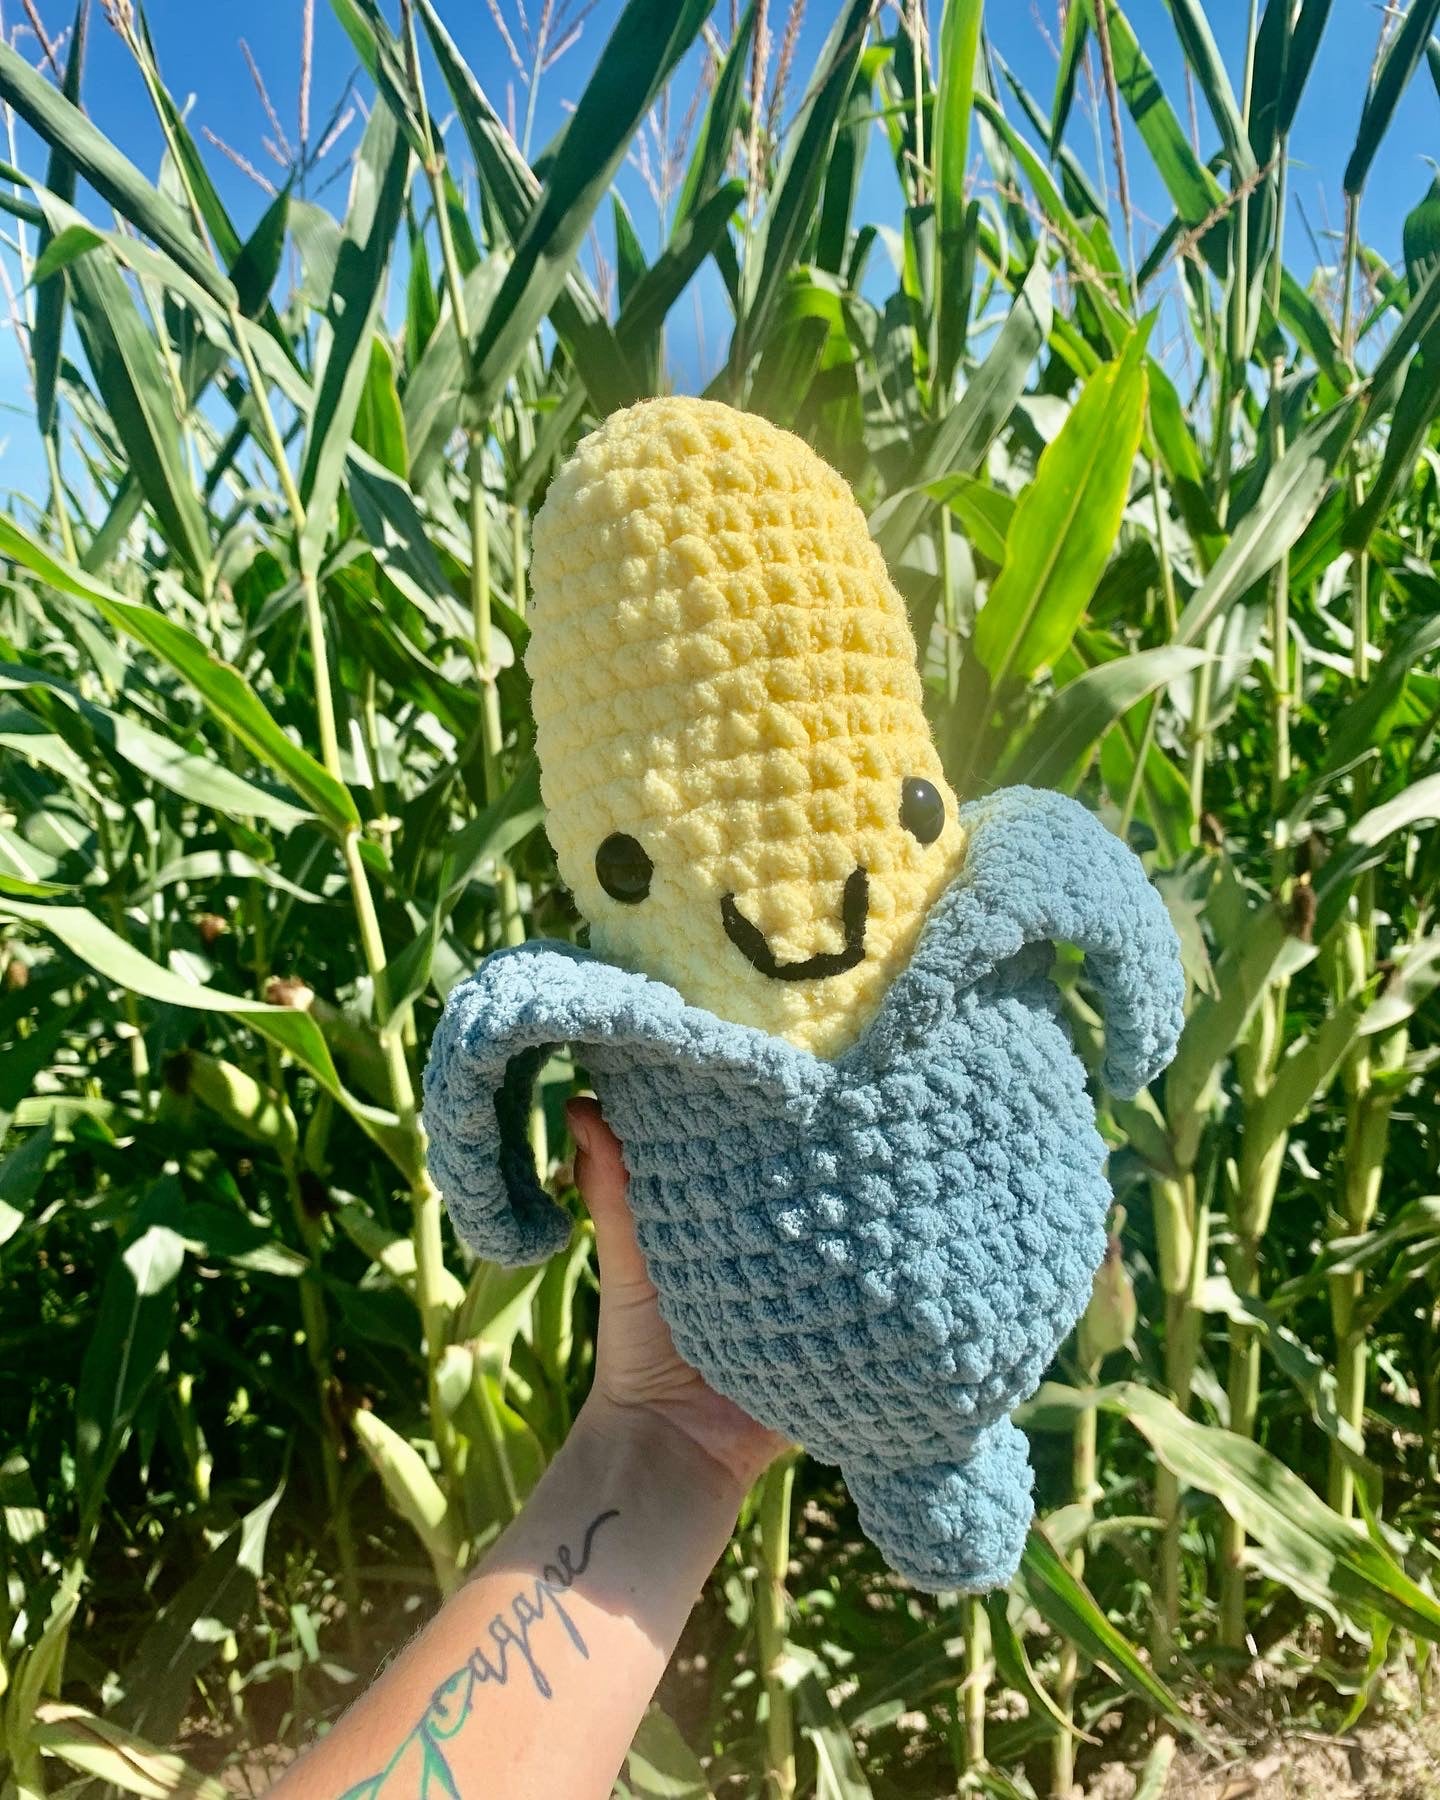 It’s Corn!